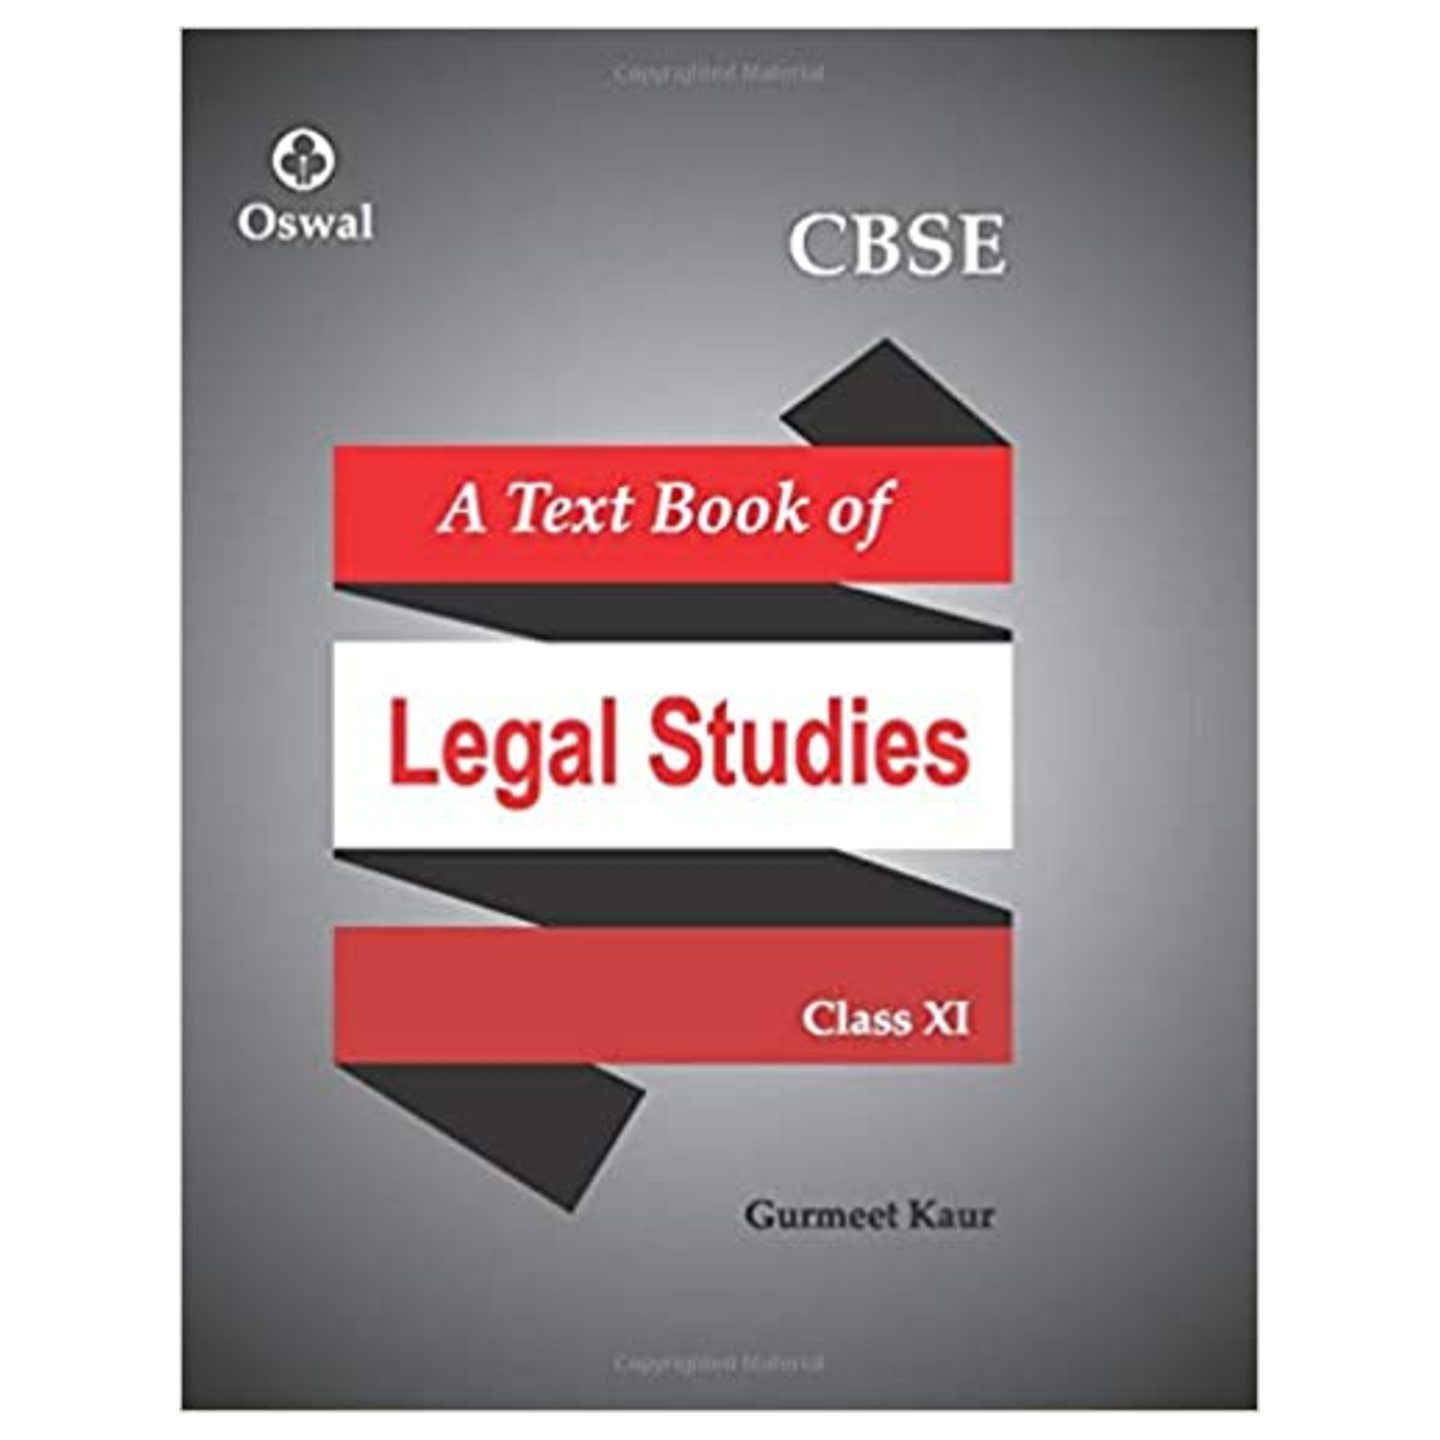 Legal Studies Textbook for CBSE Class 11 GURMEET KAUR